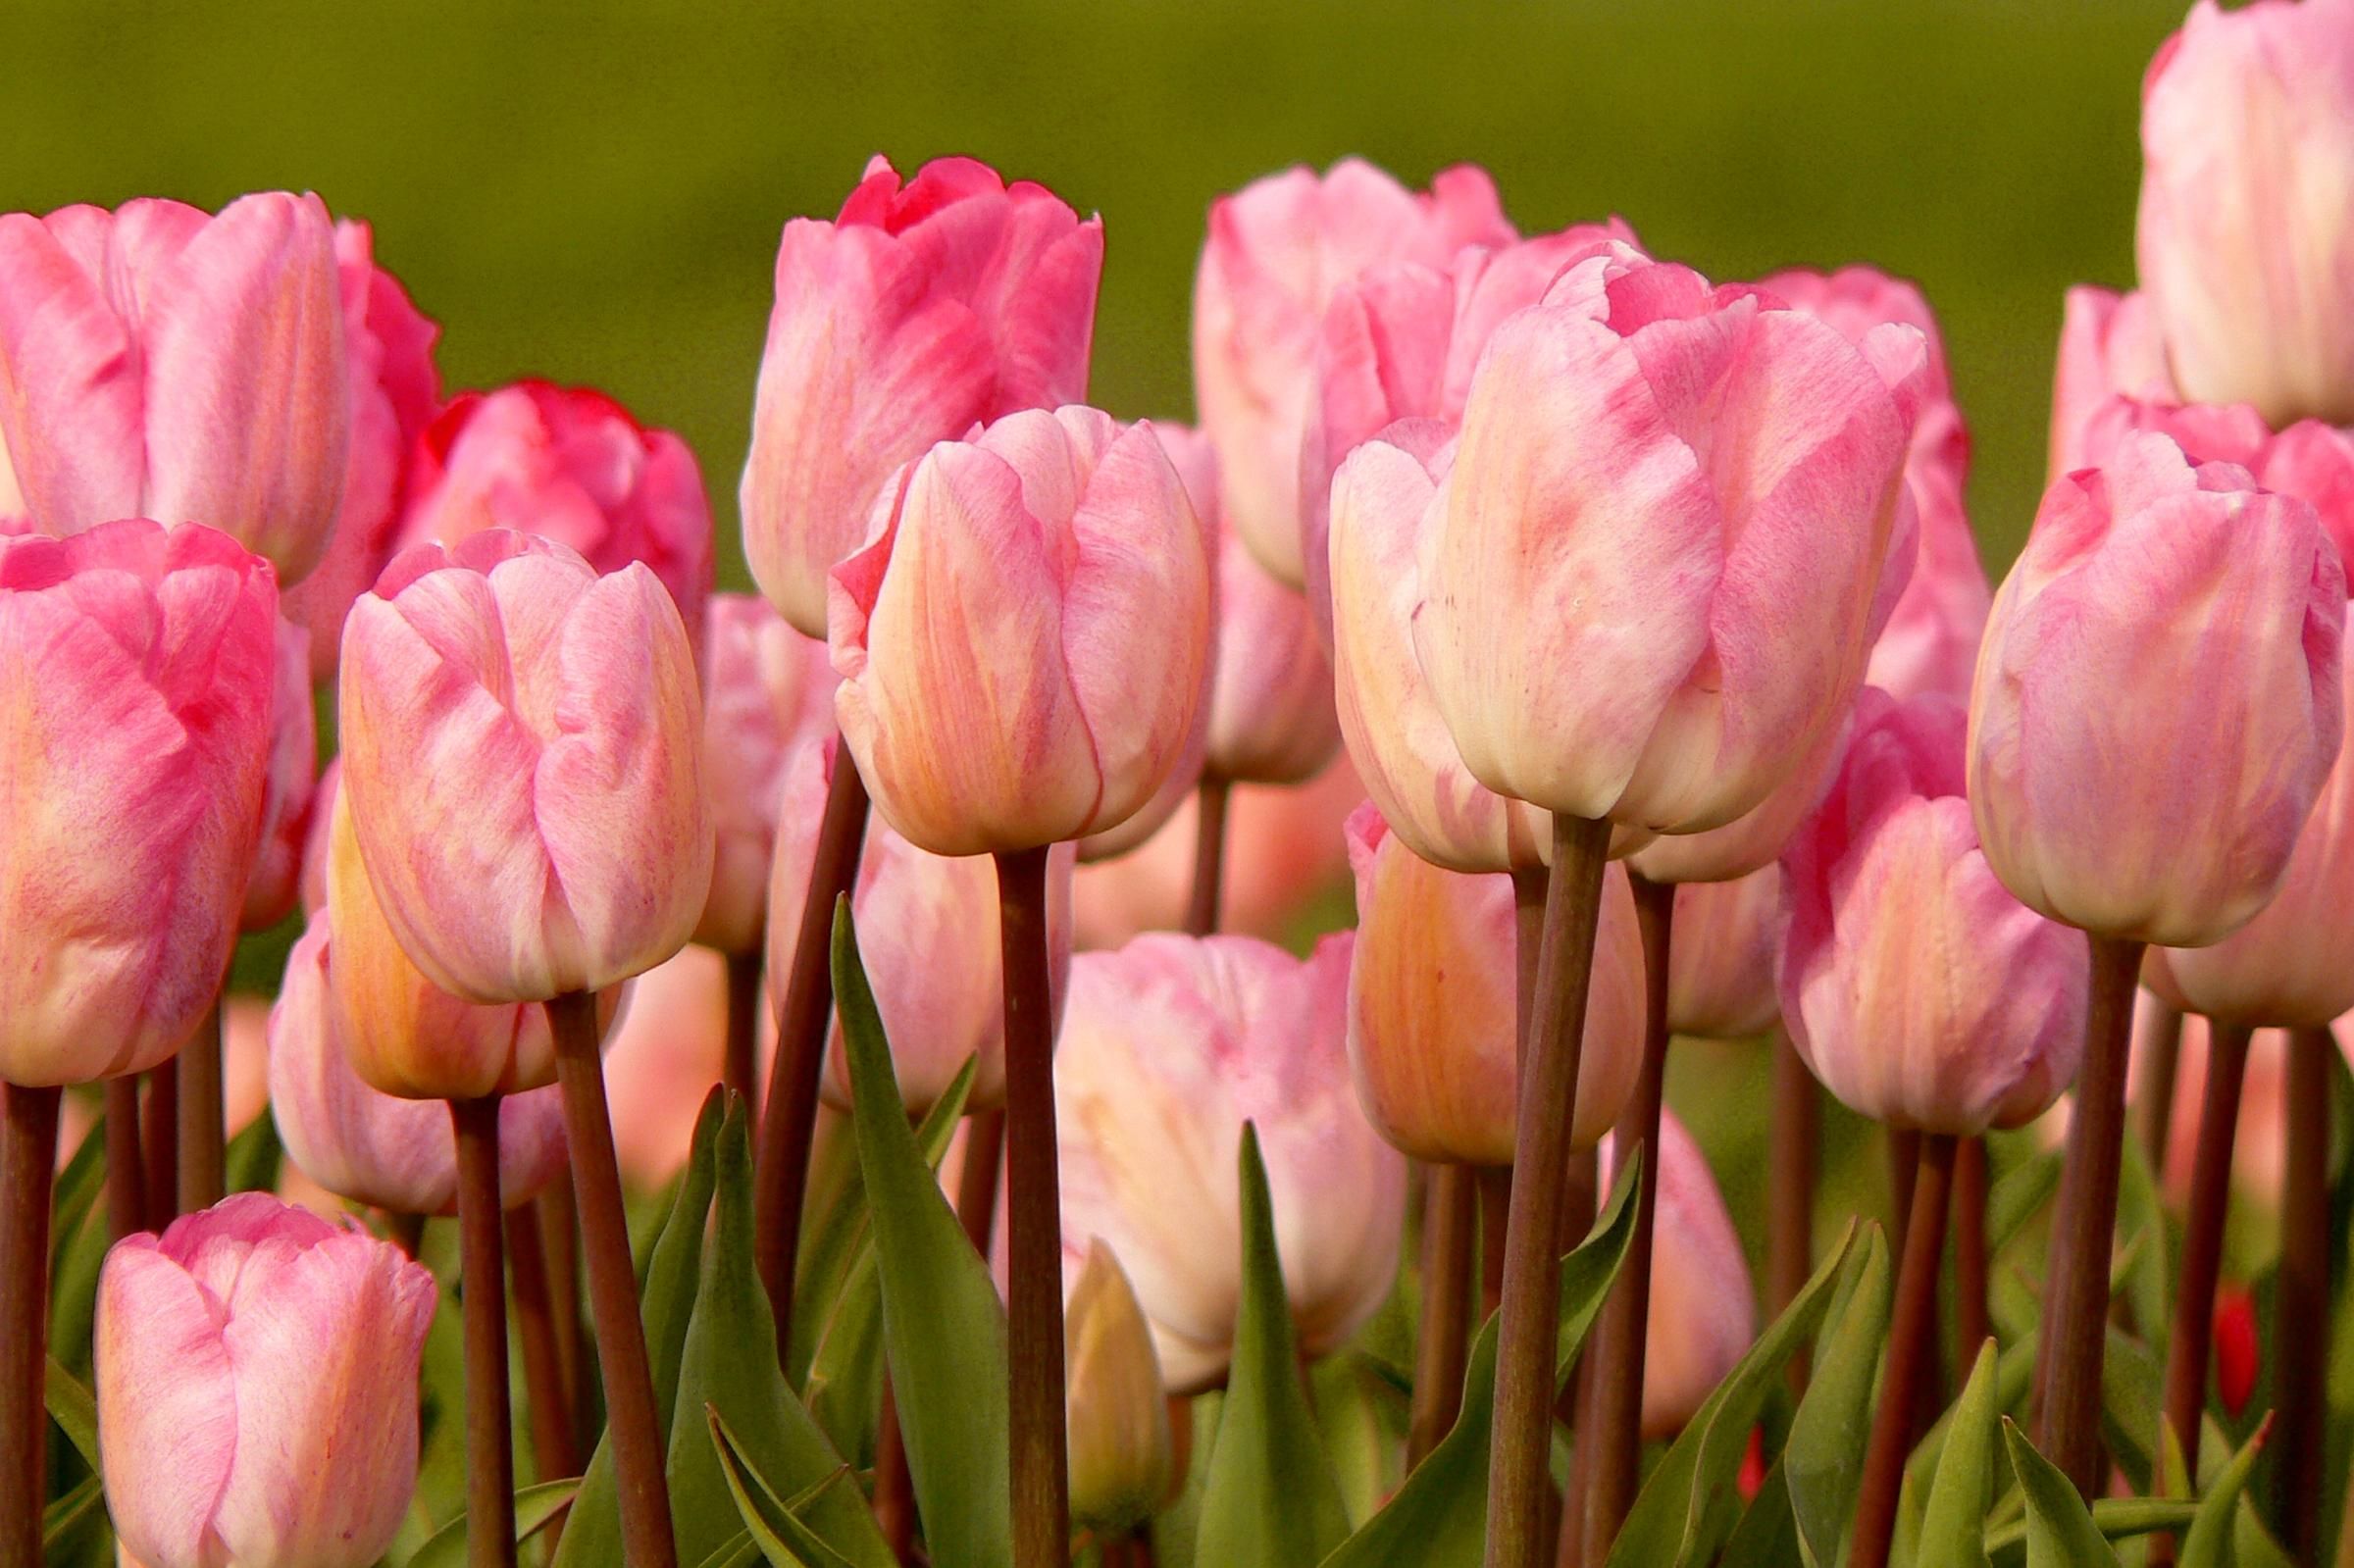 720p fonds d'écran pour android,fleur,plante à fleurs,pétale,tulipe,rose